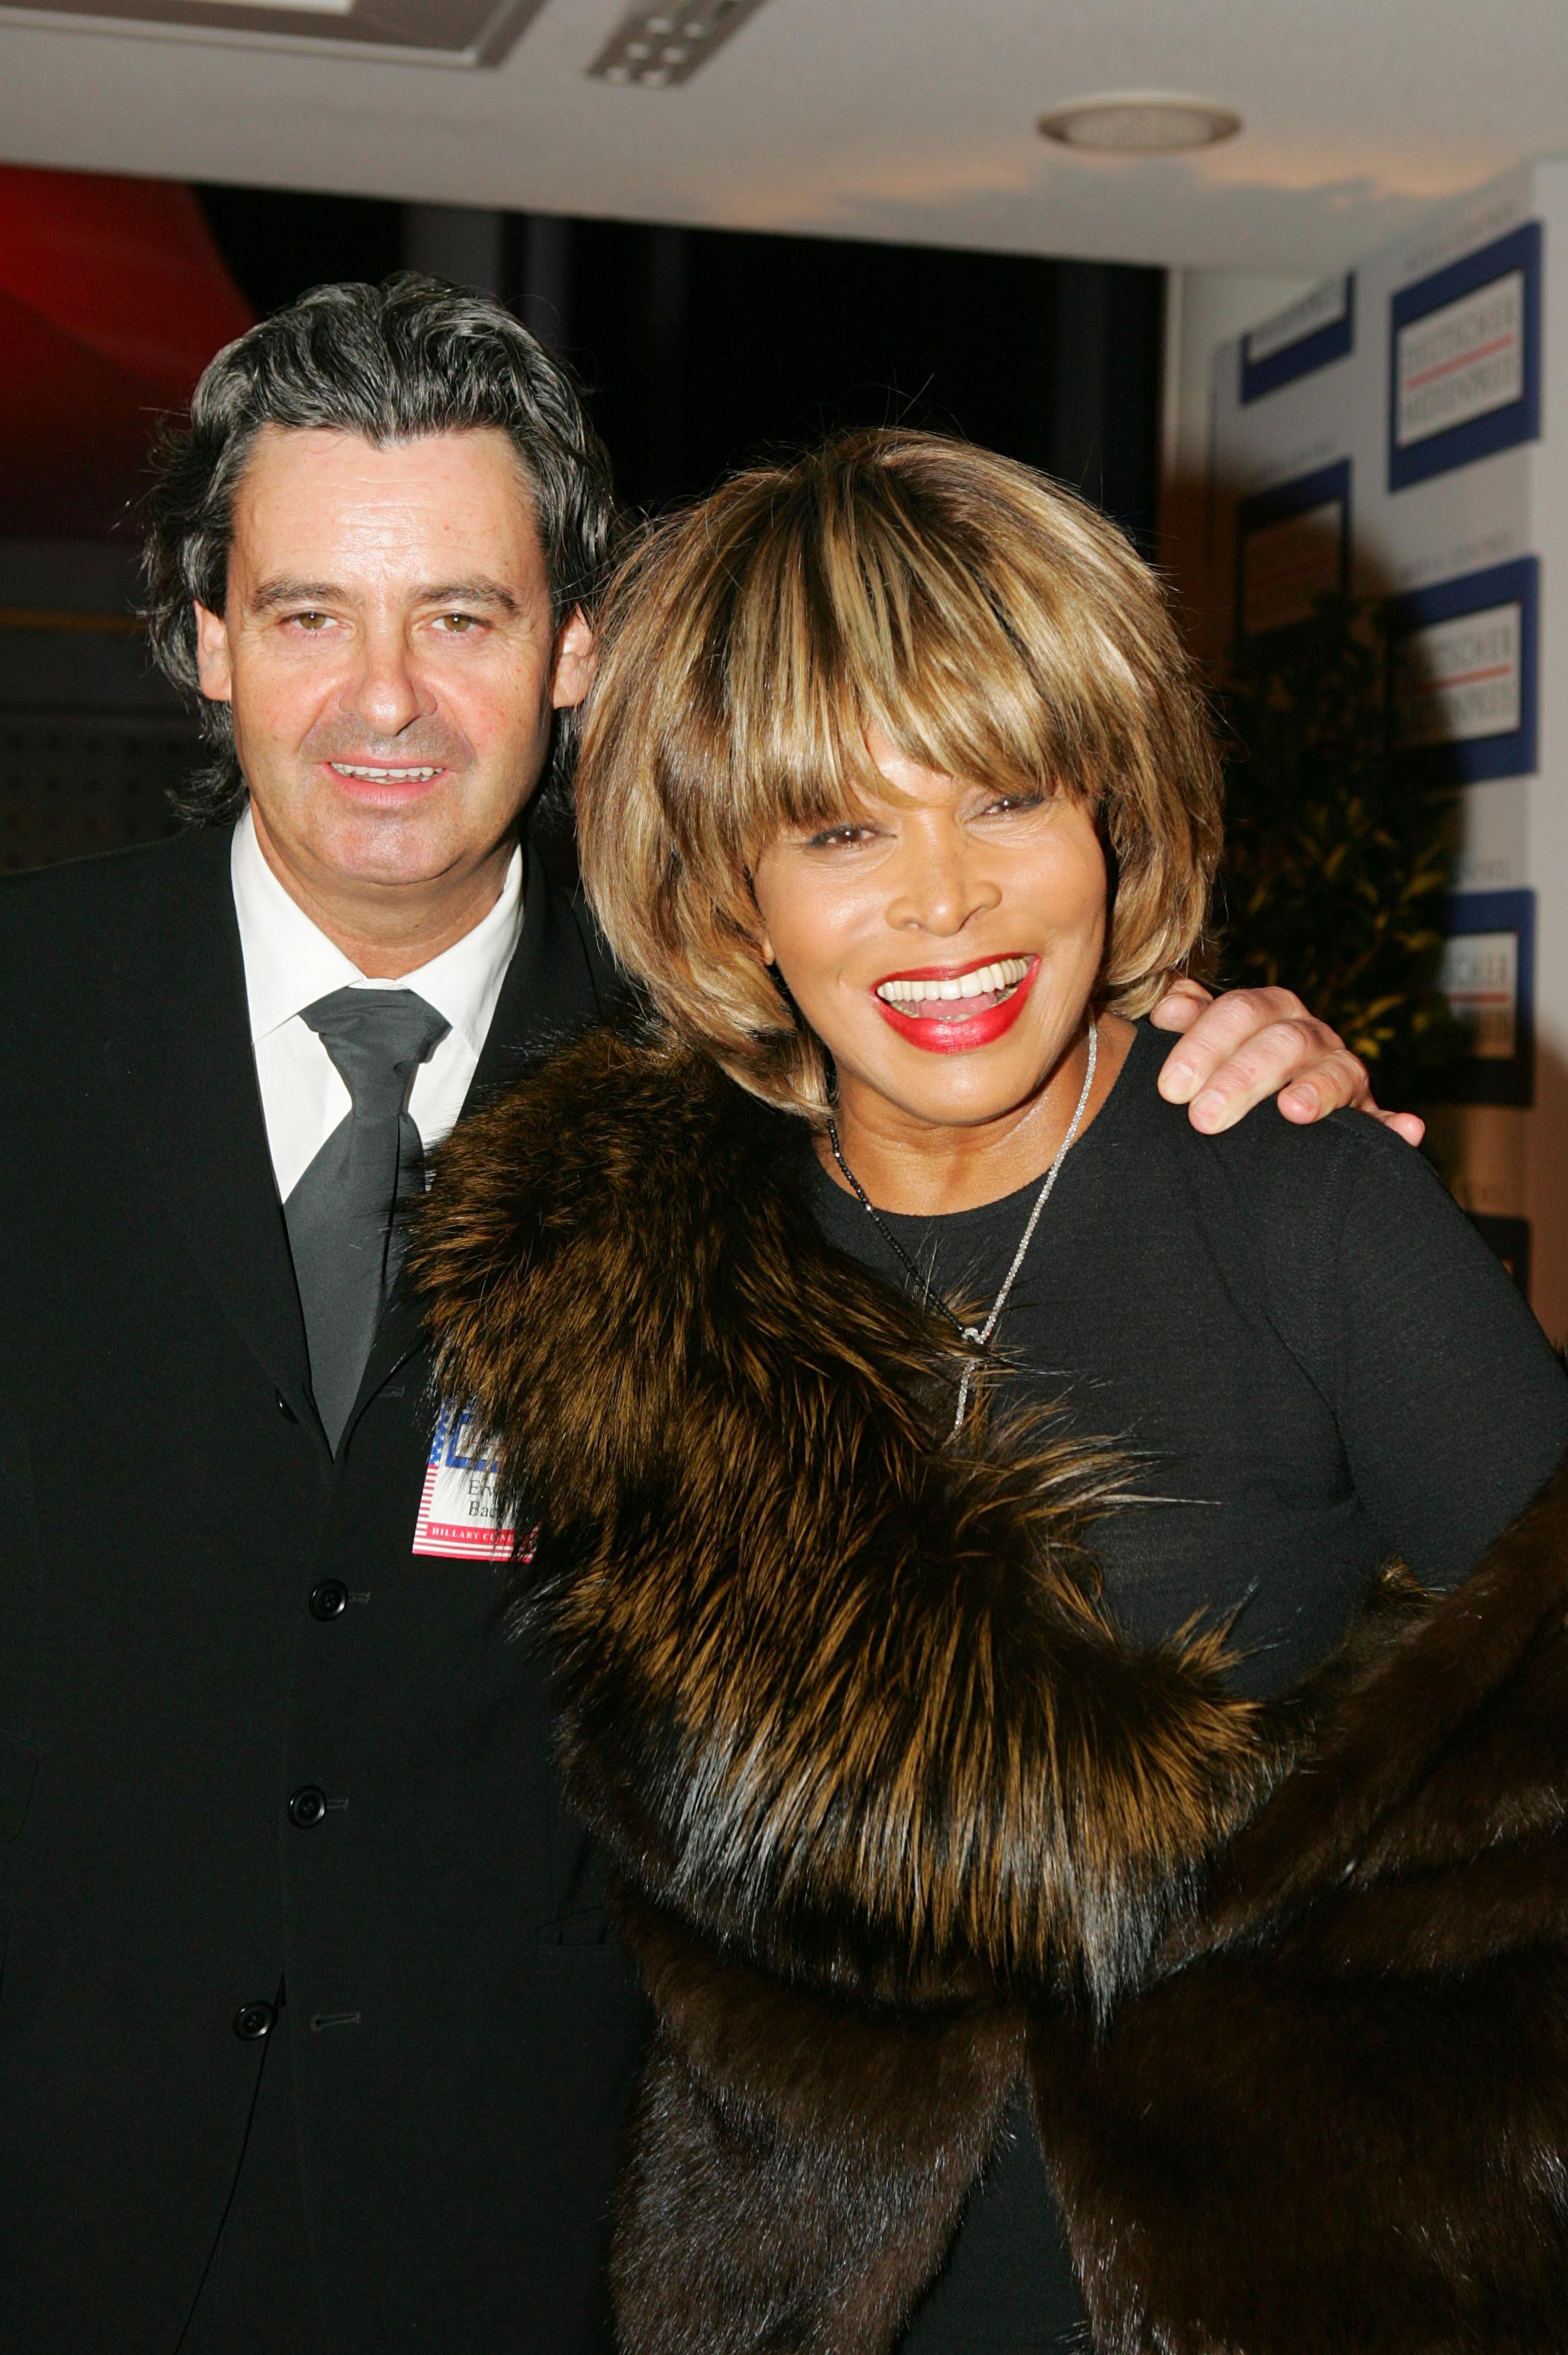 Erwin Bach und Tina Turner beim Event des Deutschen Medienpreises im Jahr 2005 | Quelle: Getty Images